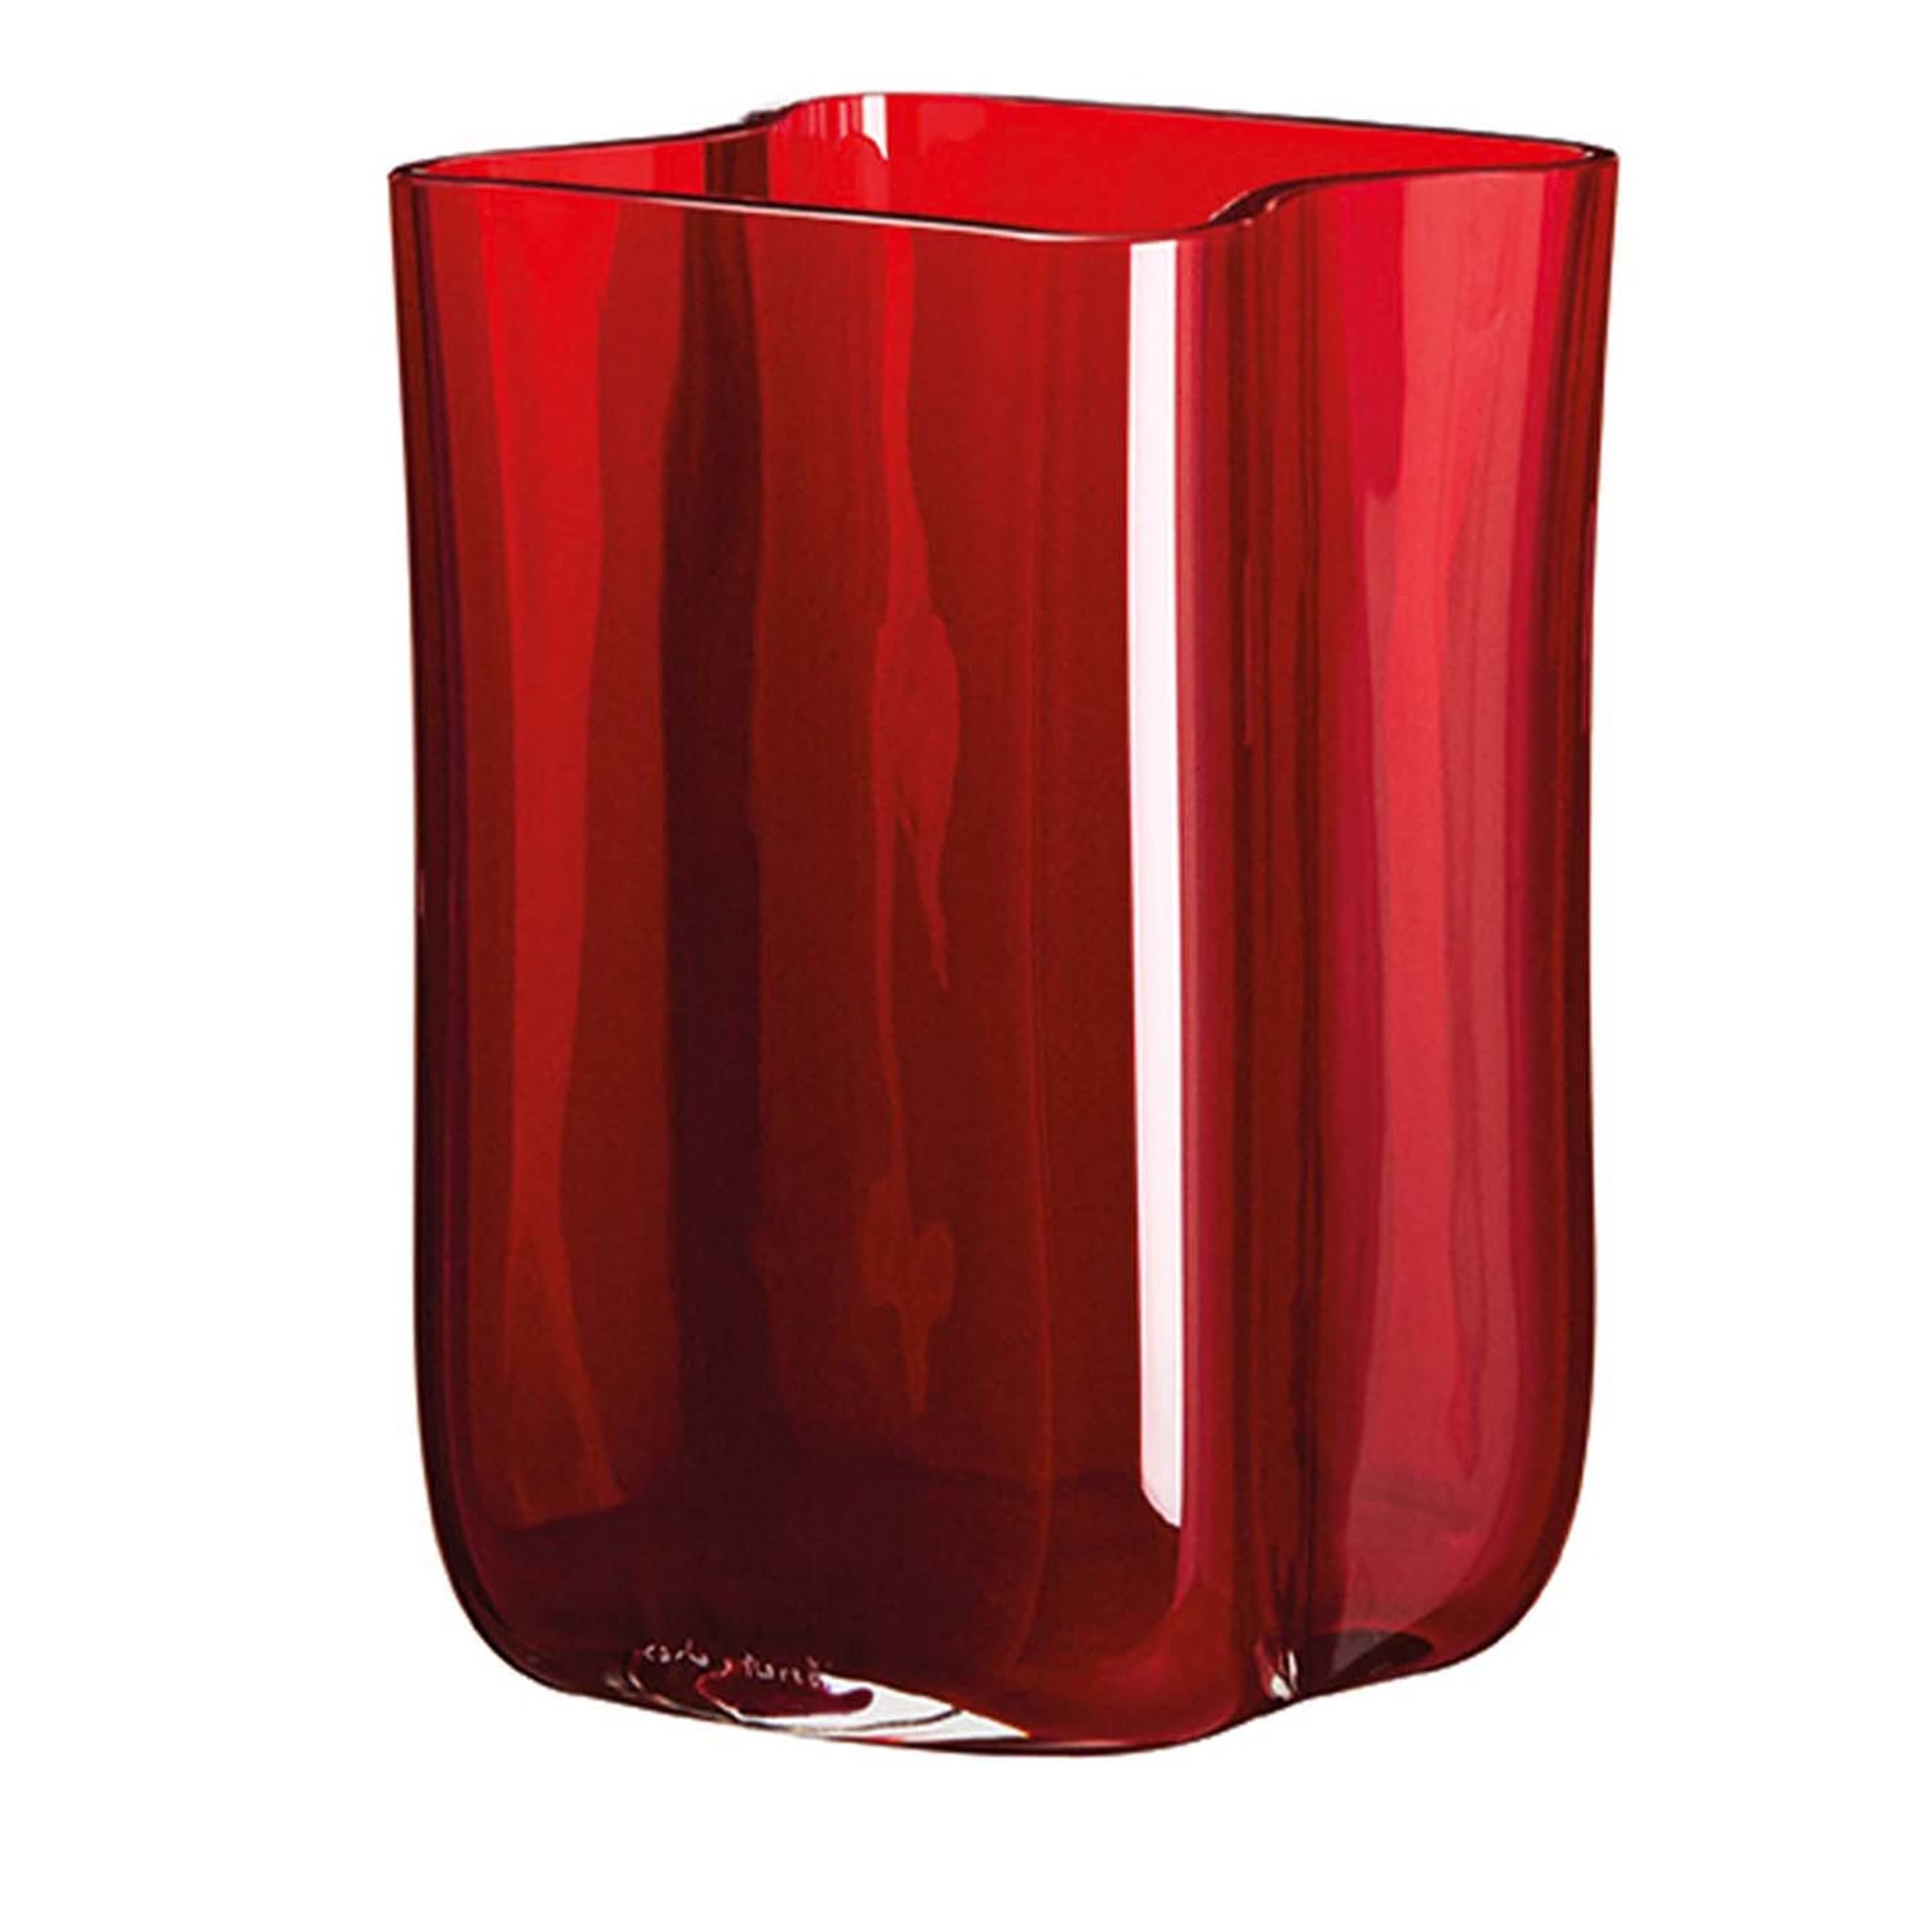 Bosco Kleine rote Vase mit Voluten von Carlo Moretti - Hauptansicht